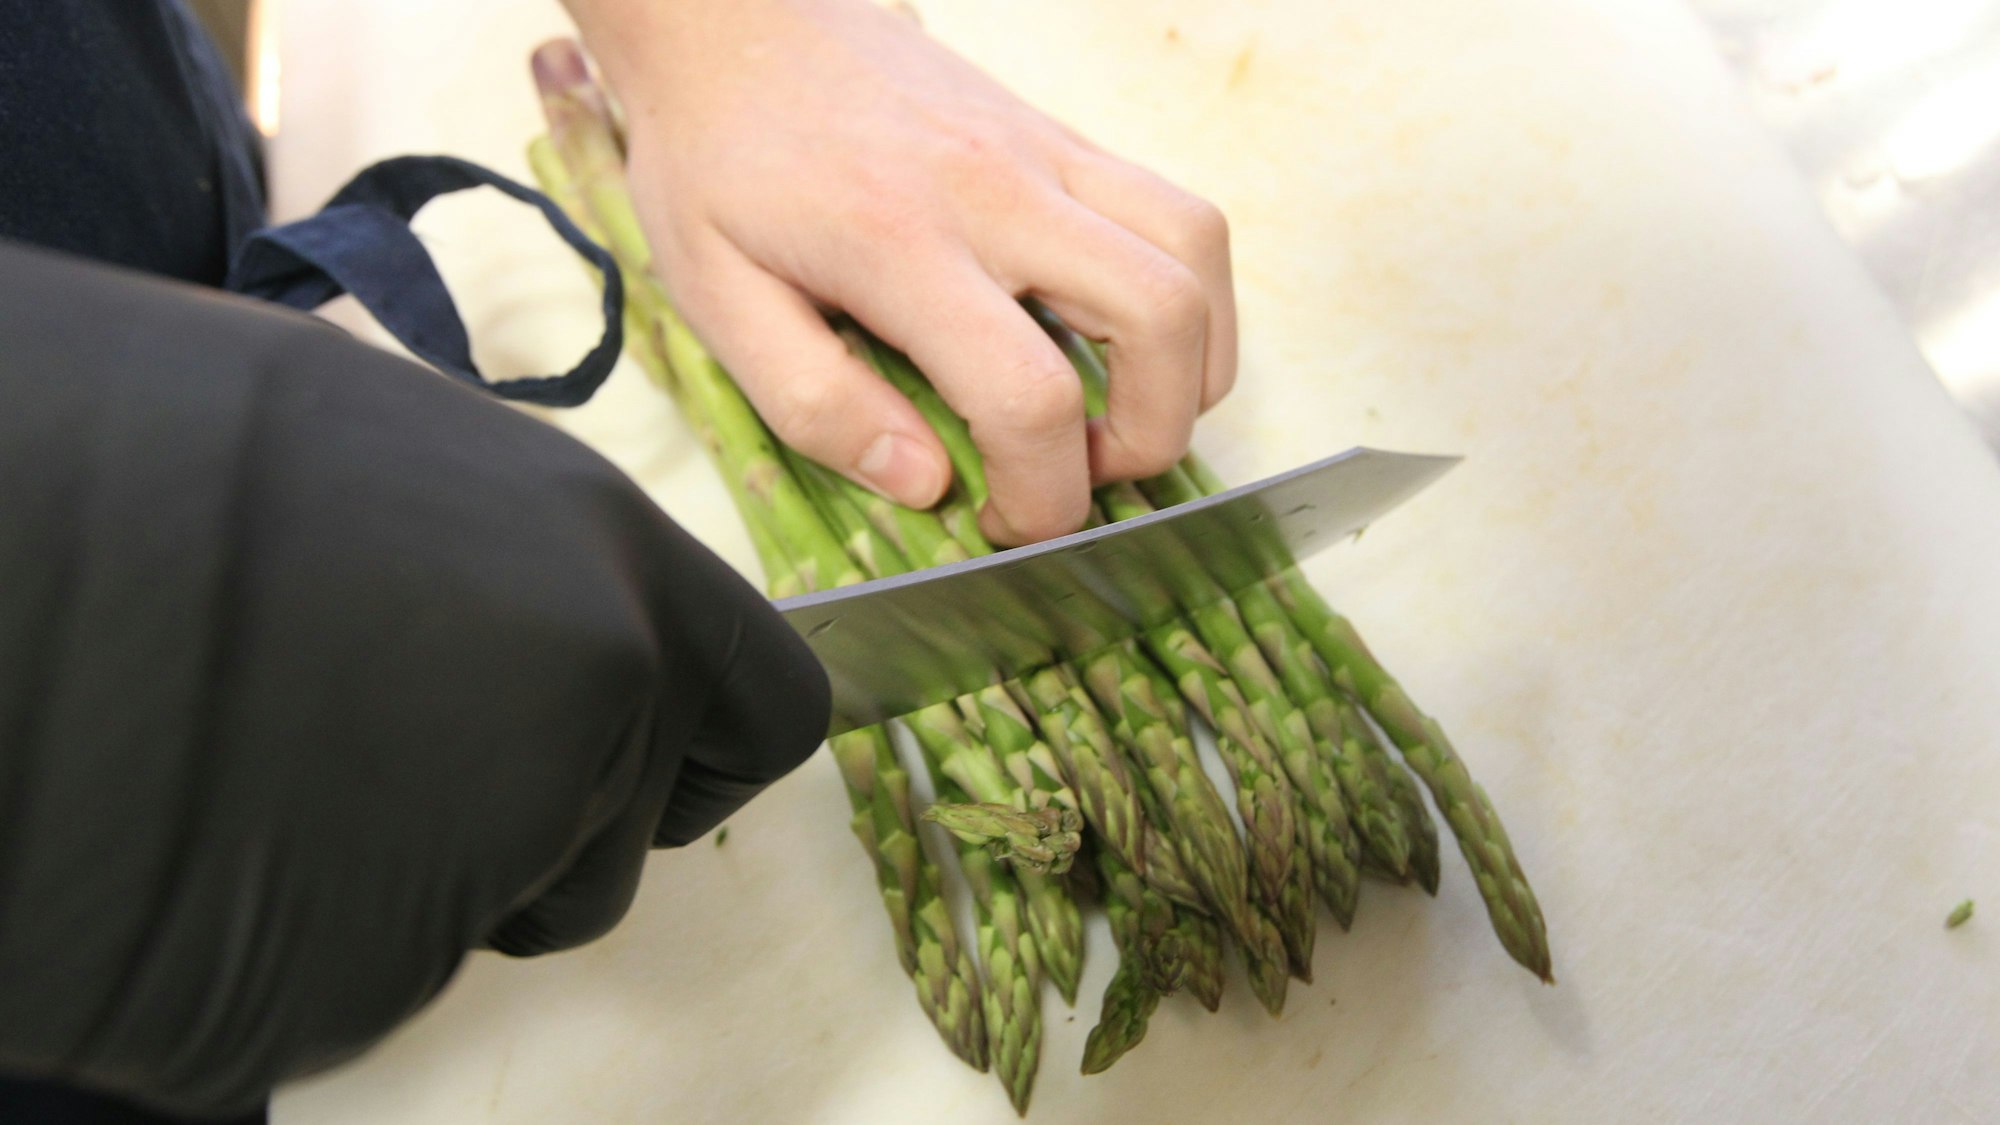 Grüner Spargel wird geschnitten. Die Hand mit dem Messer trägt einen schwarzen Handschuh.